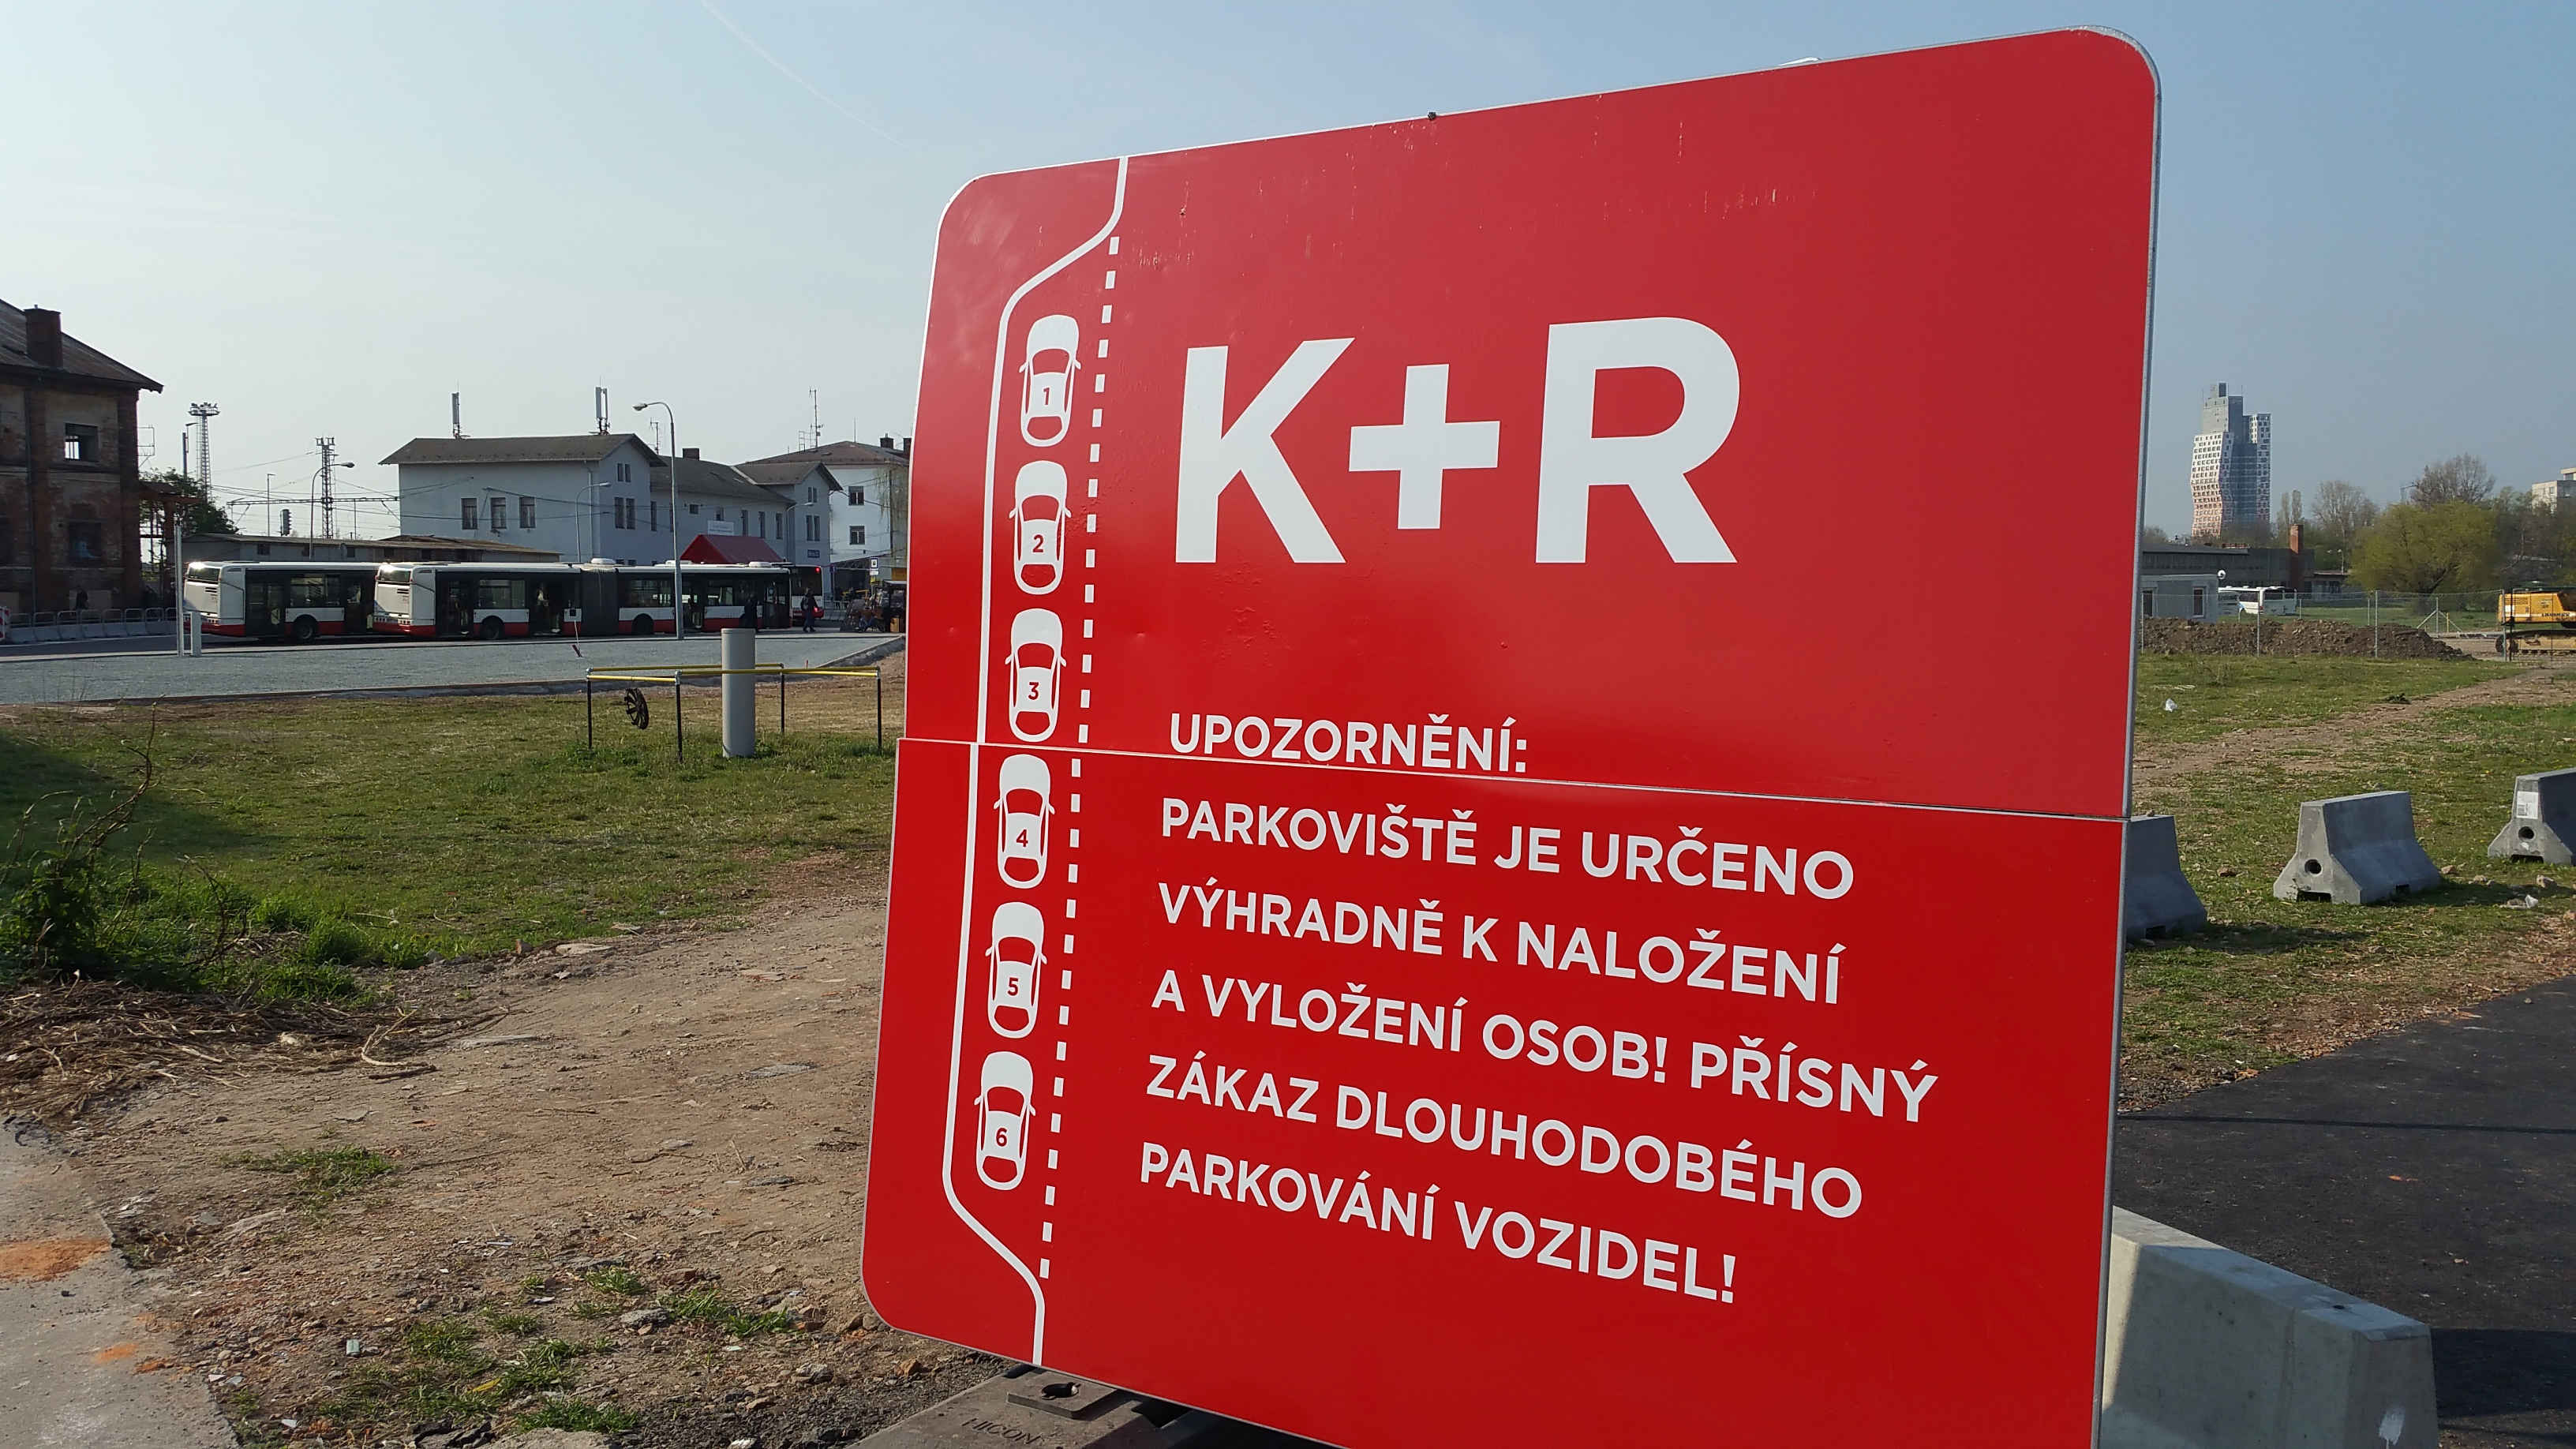 Nové parkoviště K + R před brněnským nádražím